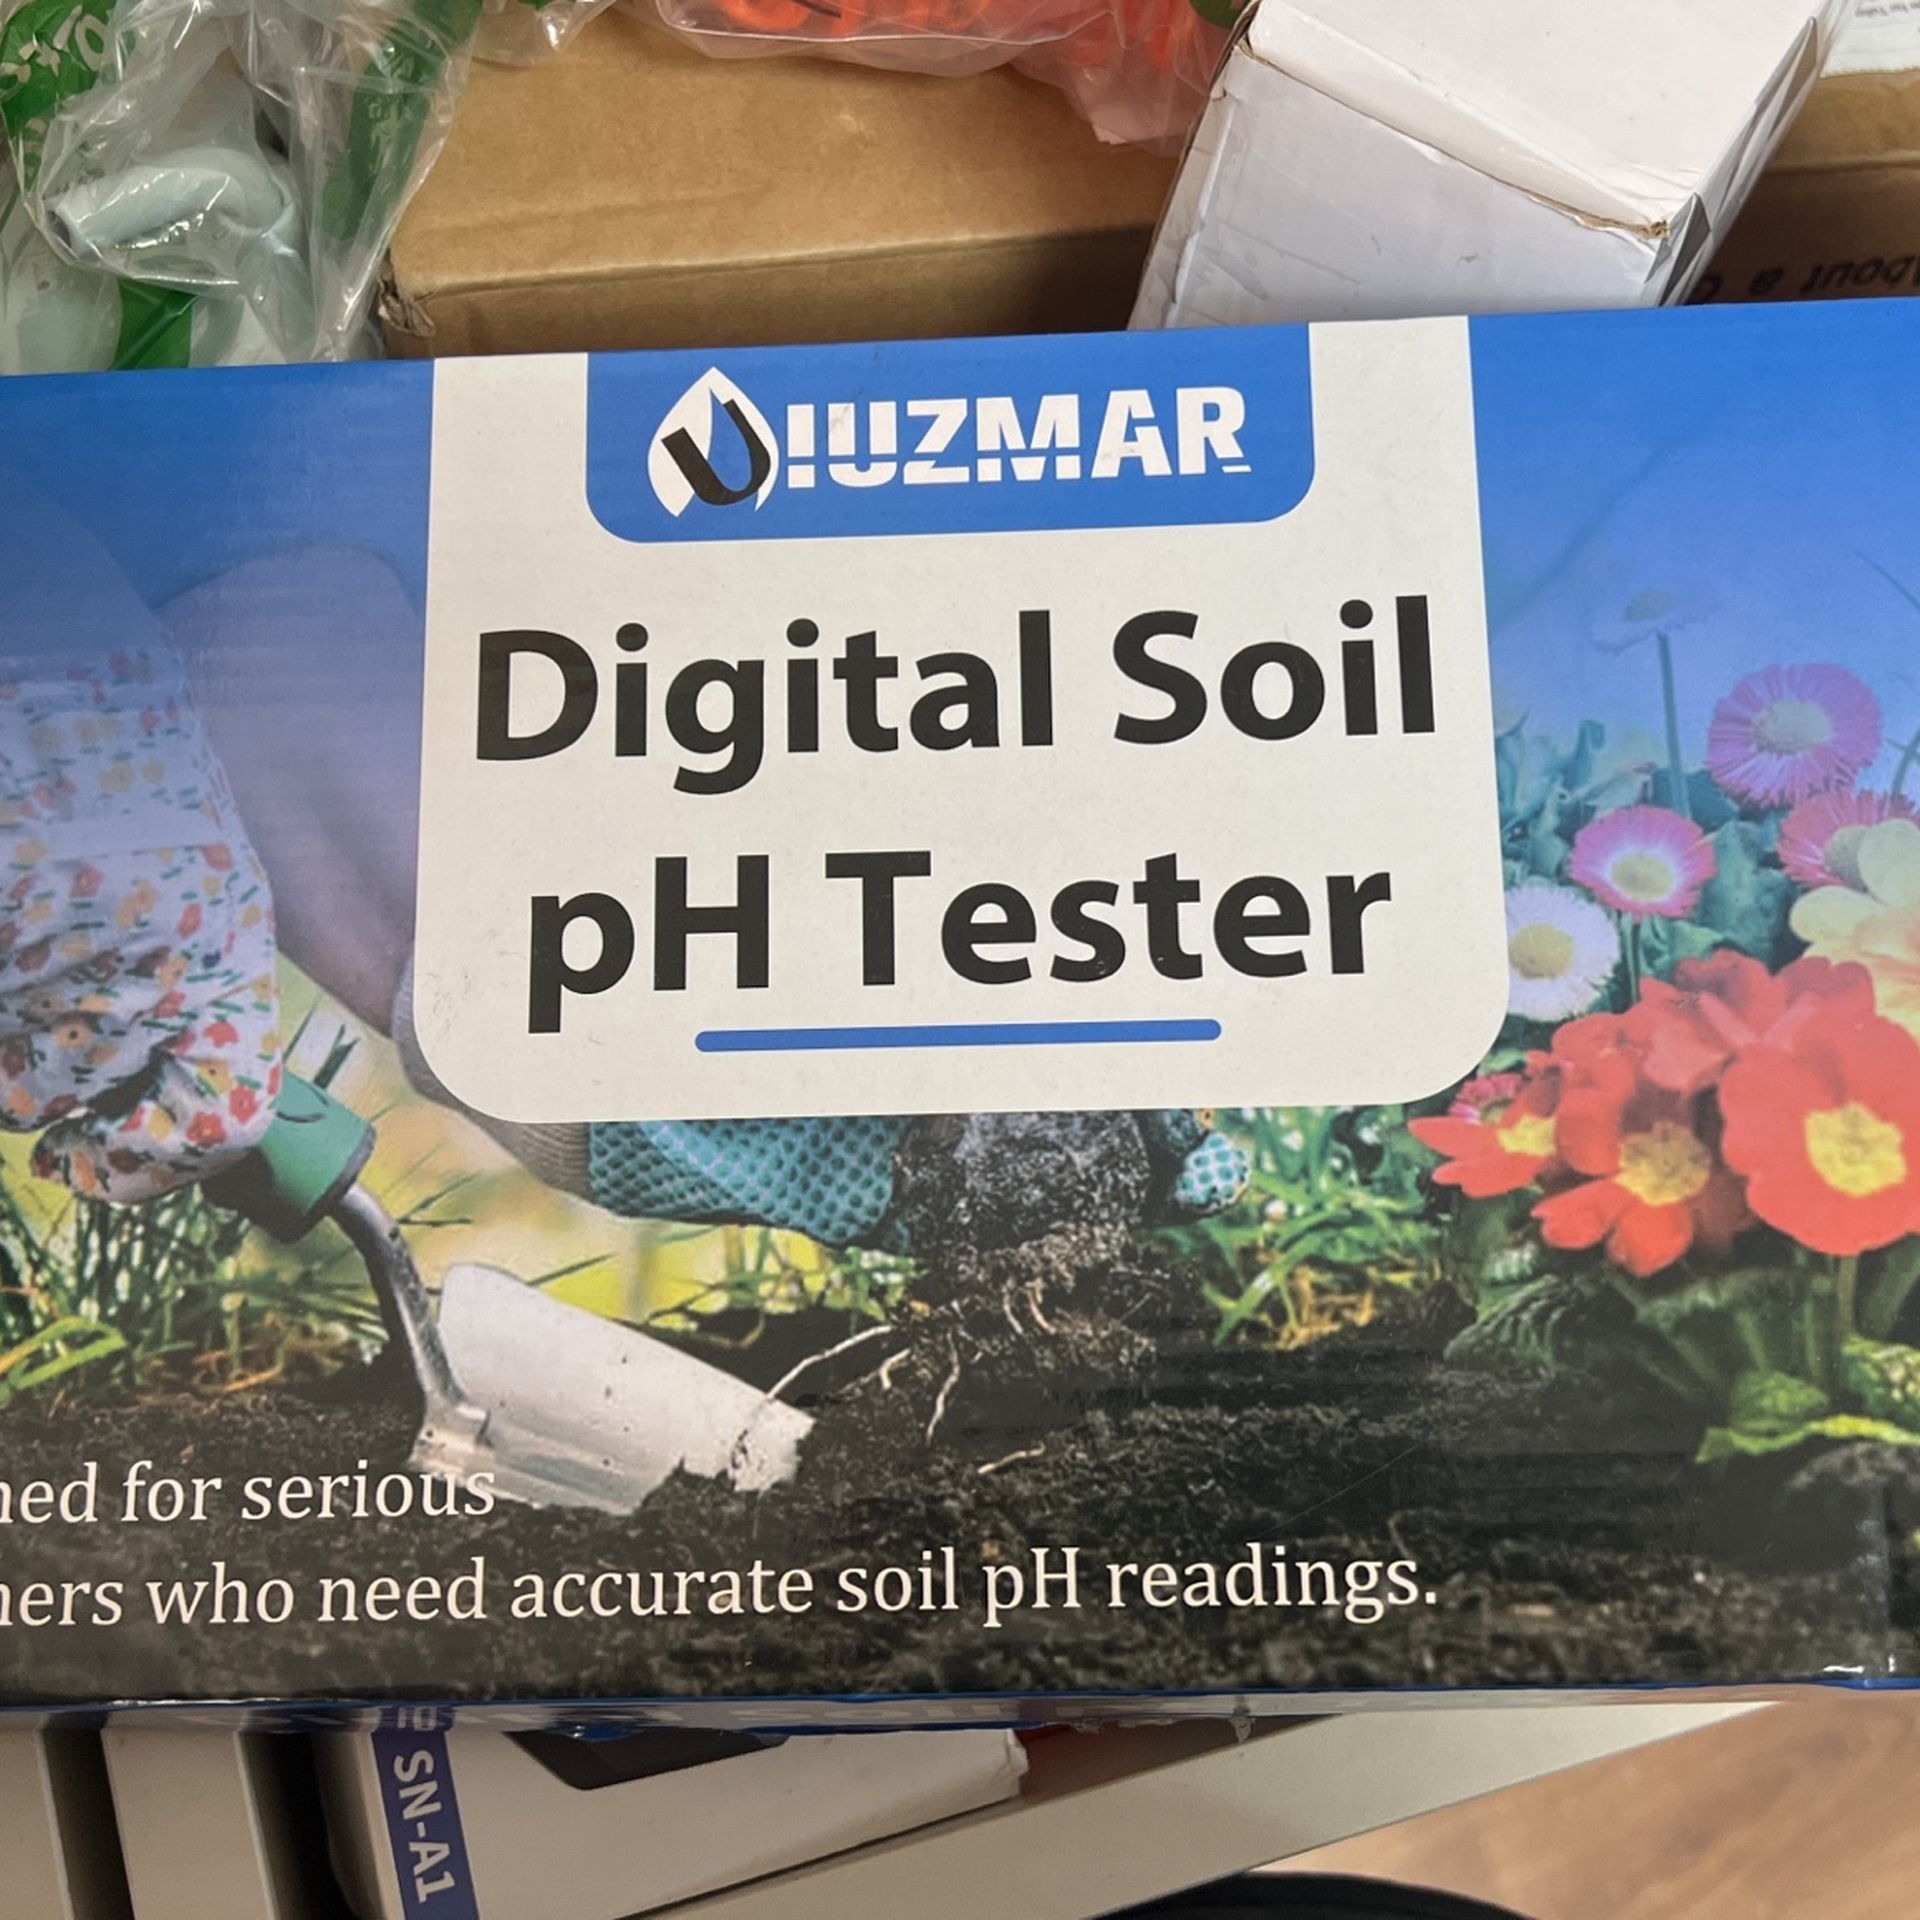 Iuzmar Digital Soil pH Tester 